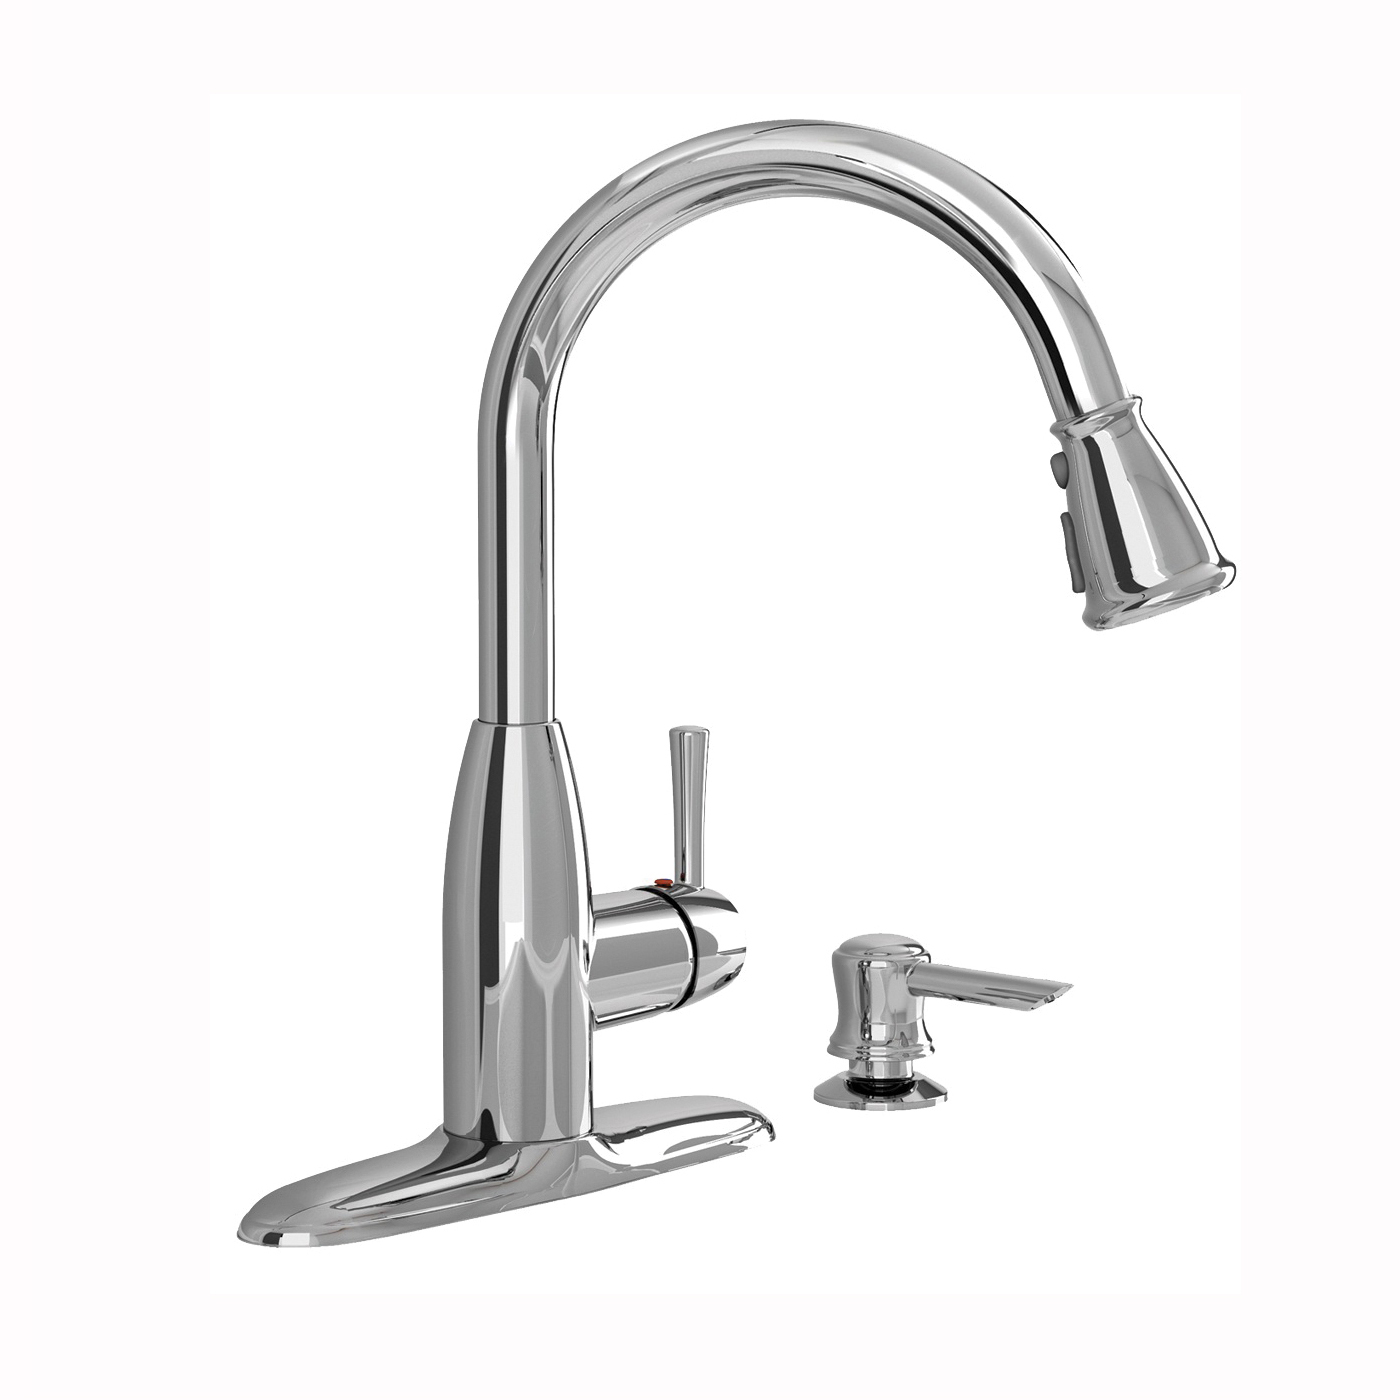 McKenzie Series 9012.301.002 Kitchen Faucet with Soap Dispenser, 1.8 gpm, 1-Faucet Handle, Zinc